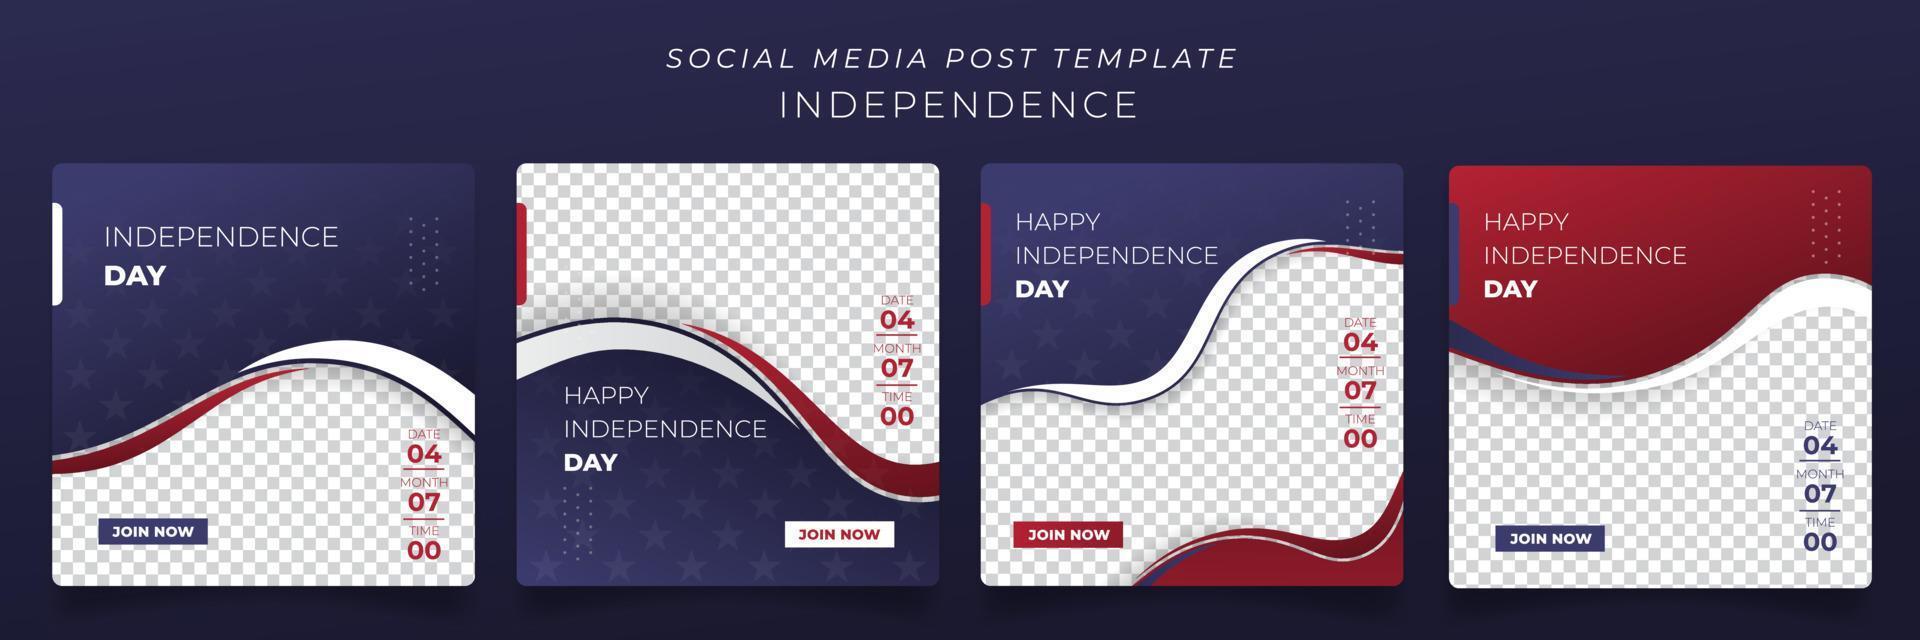 ensemble de modèle de publication sur les médias sociaux avec un fond bleu rouge et blanc pour la conception de la fête de l'indépendance américaine vecteur